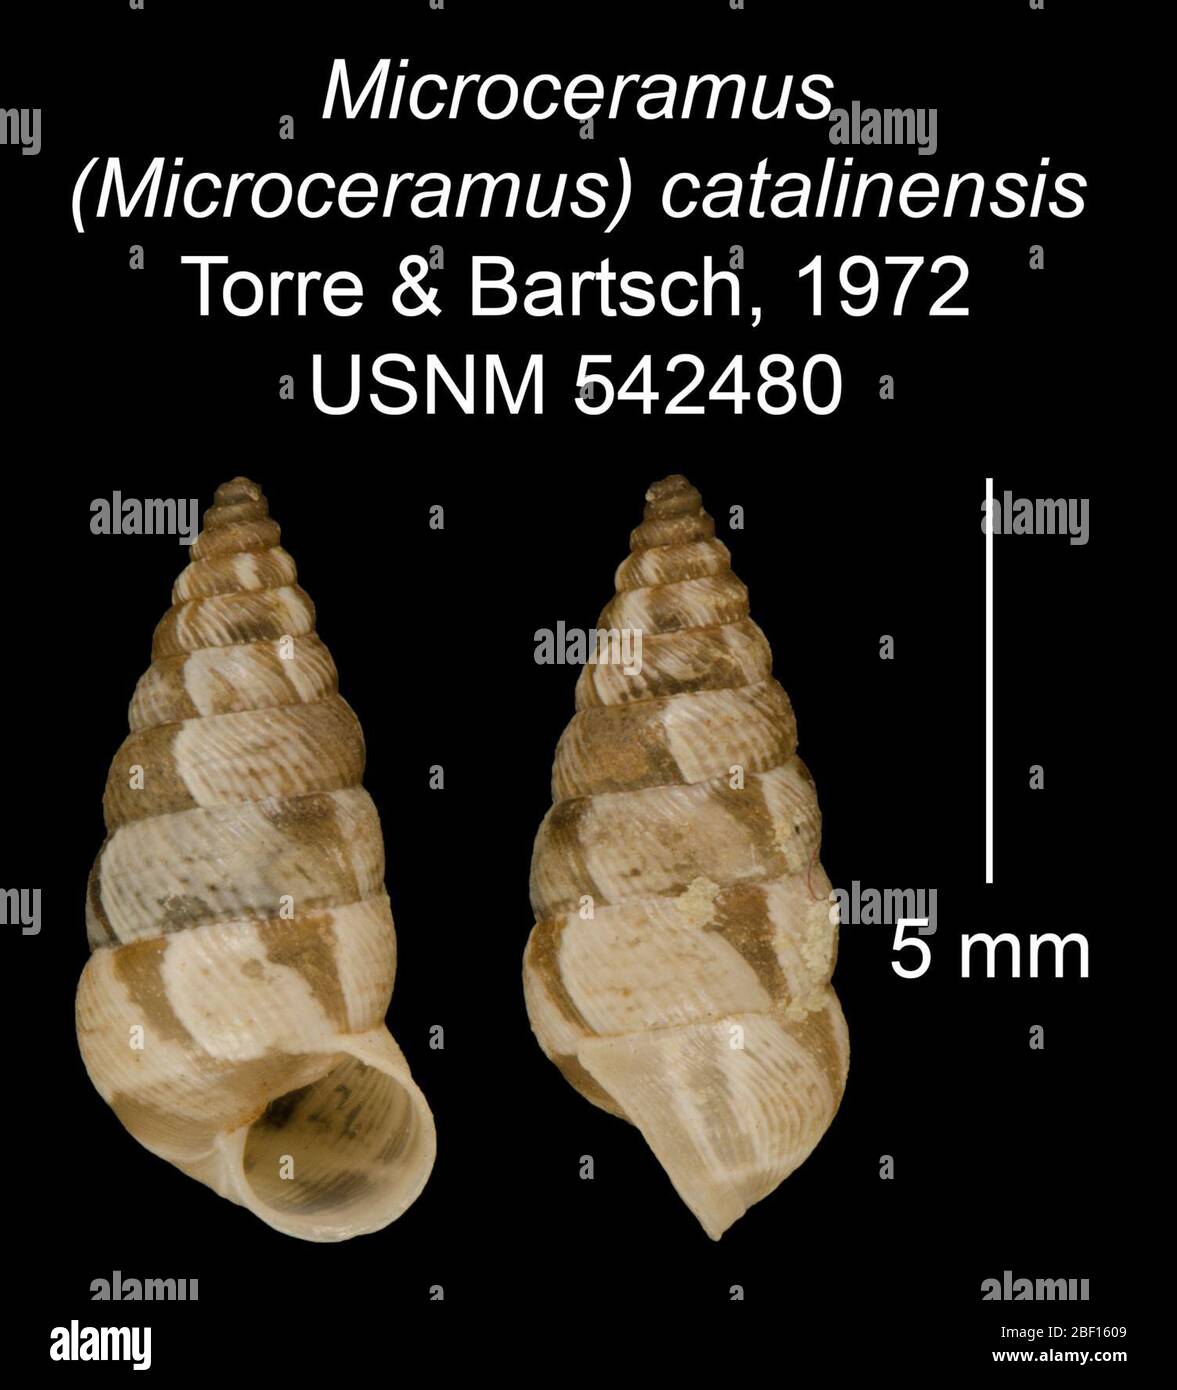 Microceramus Microceramus catalinensis. 20 Jan 20161 Stock Photo